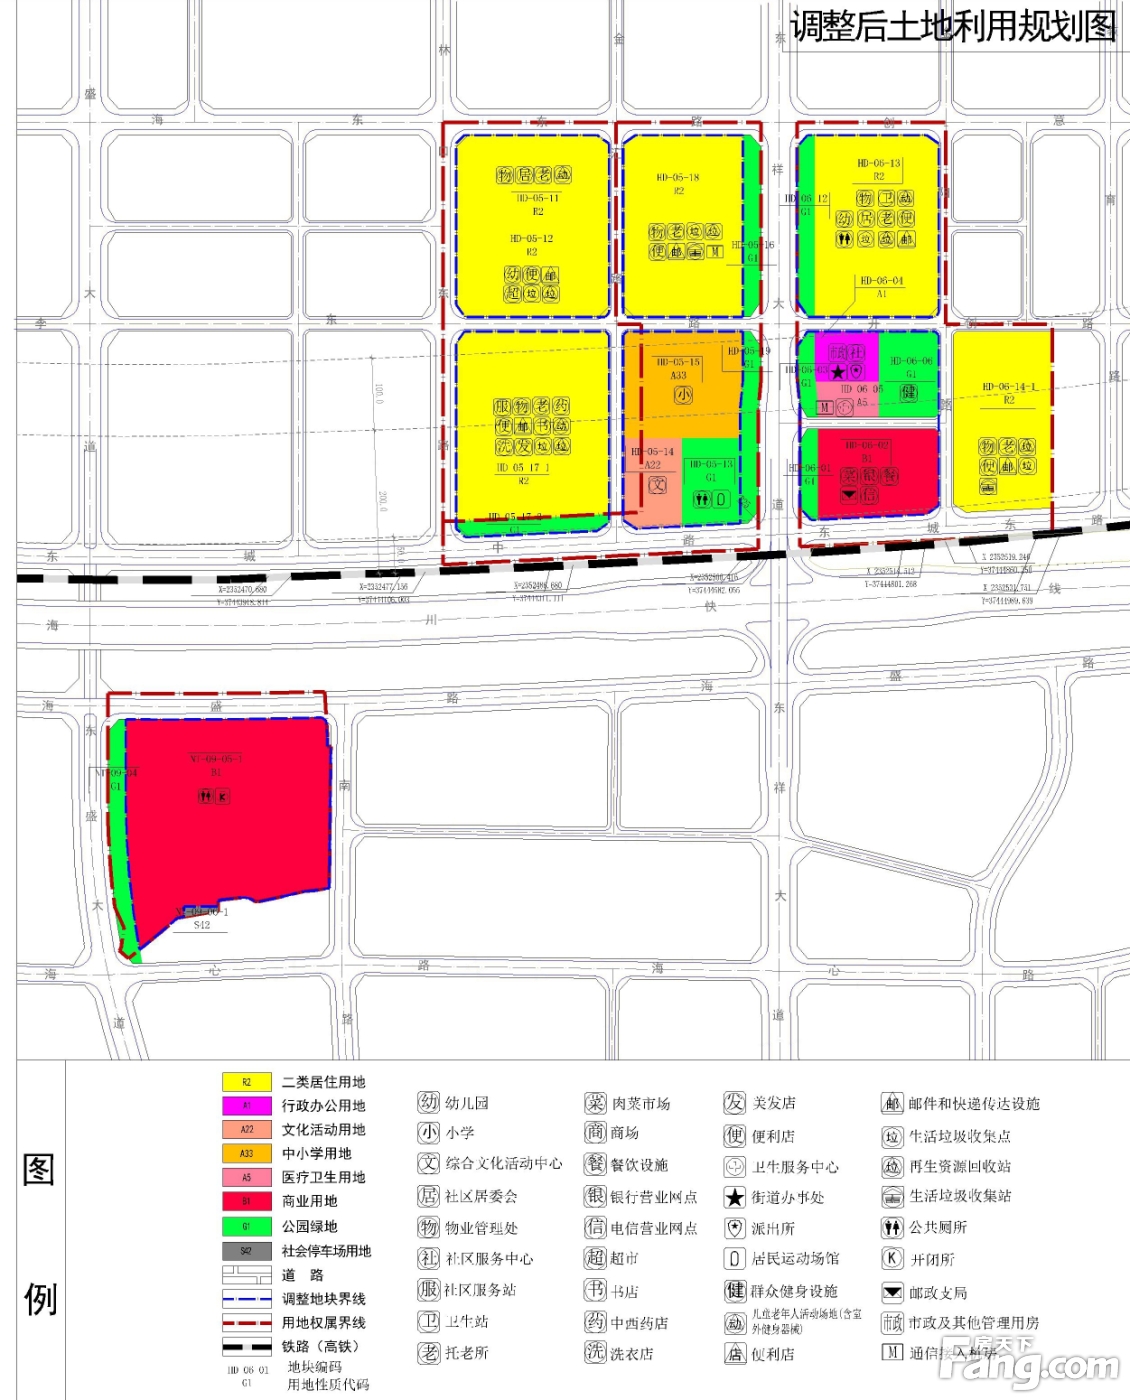 湛江海东新区控制性详细规划多块土地用途调整 涉及湛江市海东新区、海川快线两侧